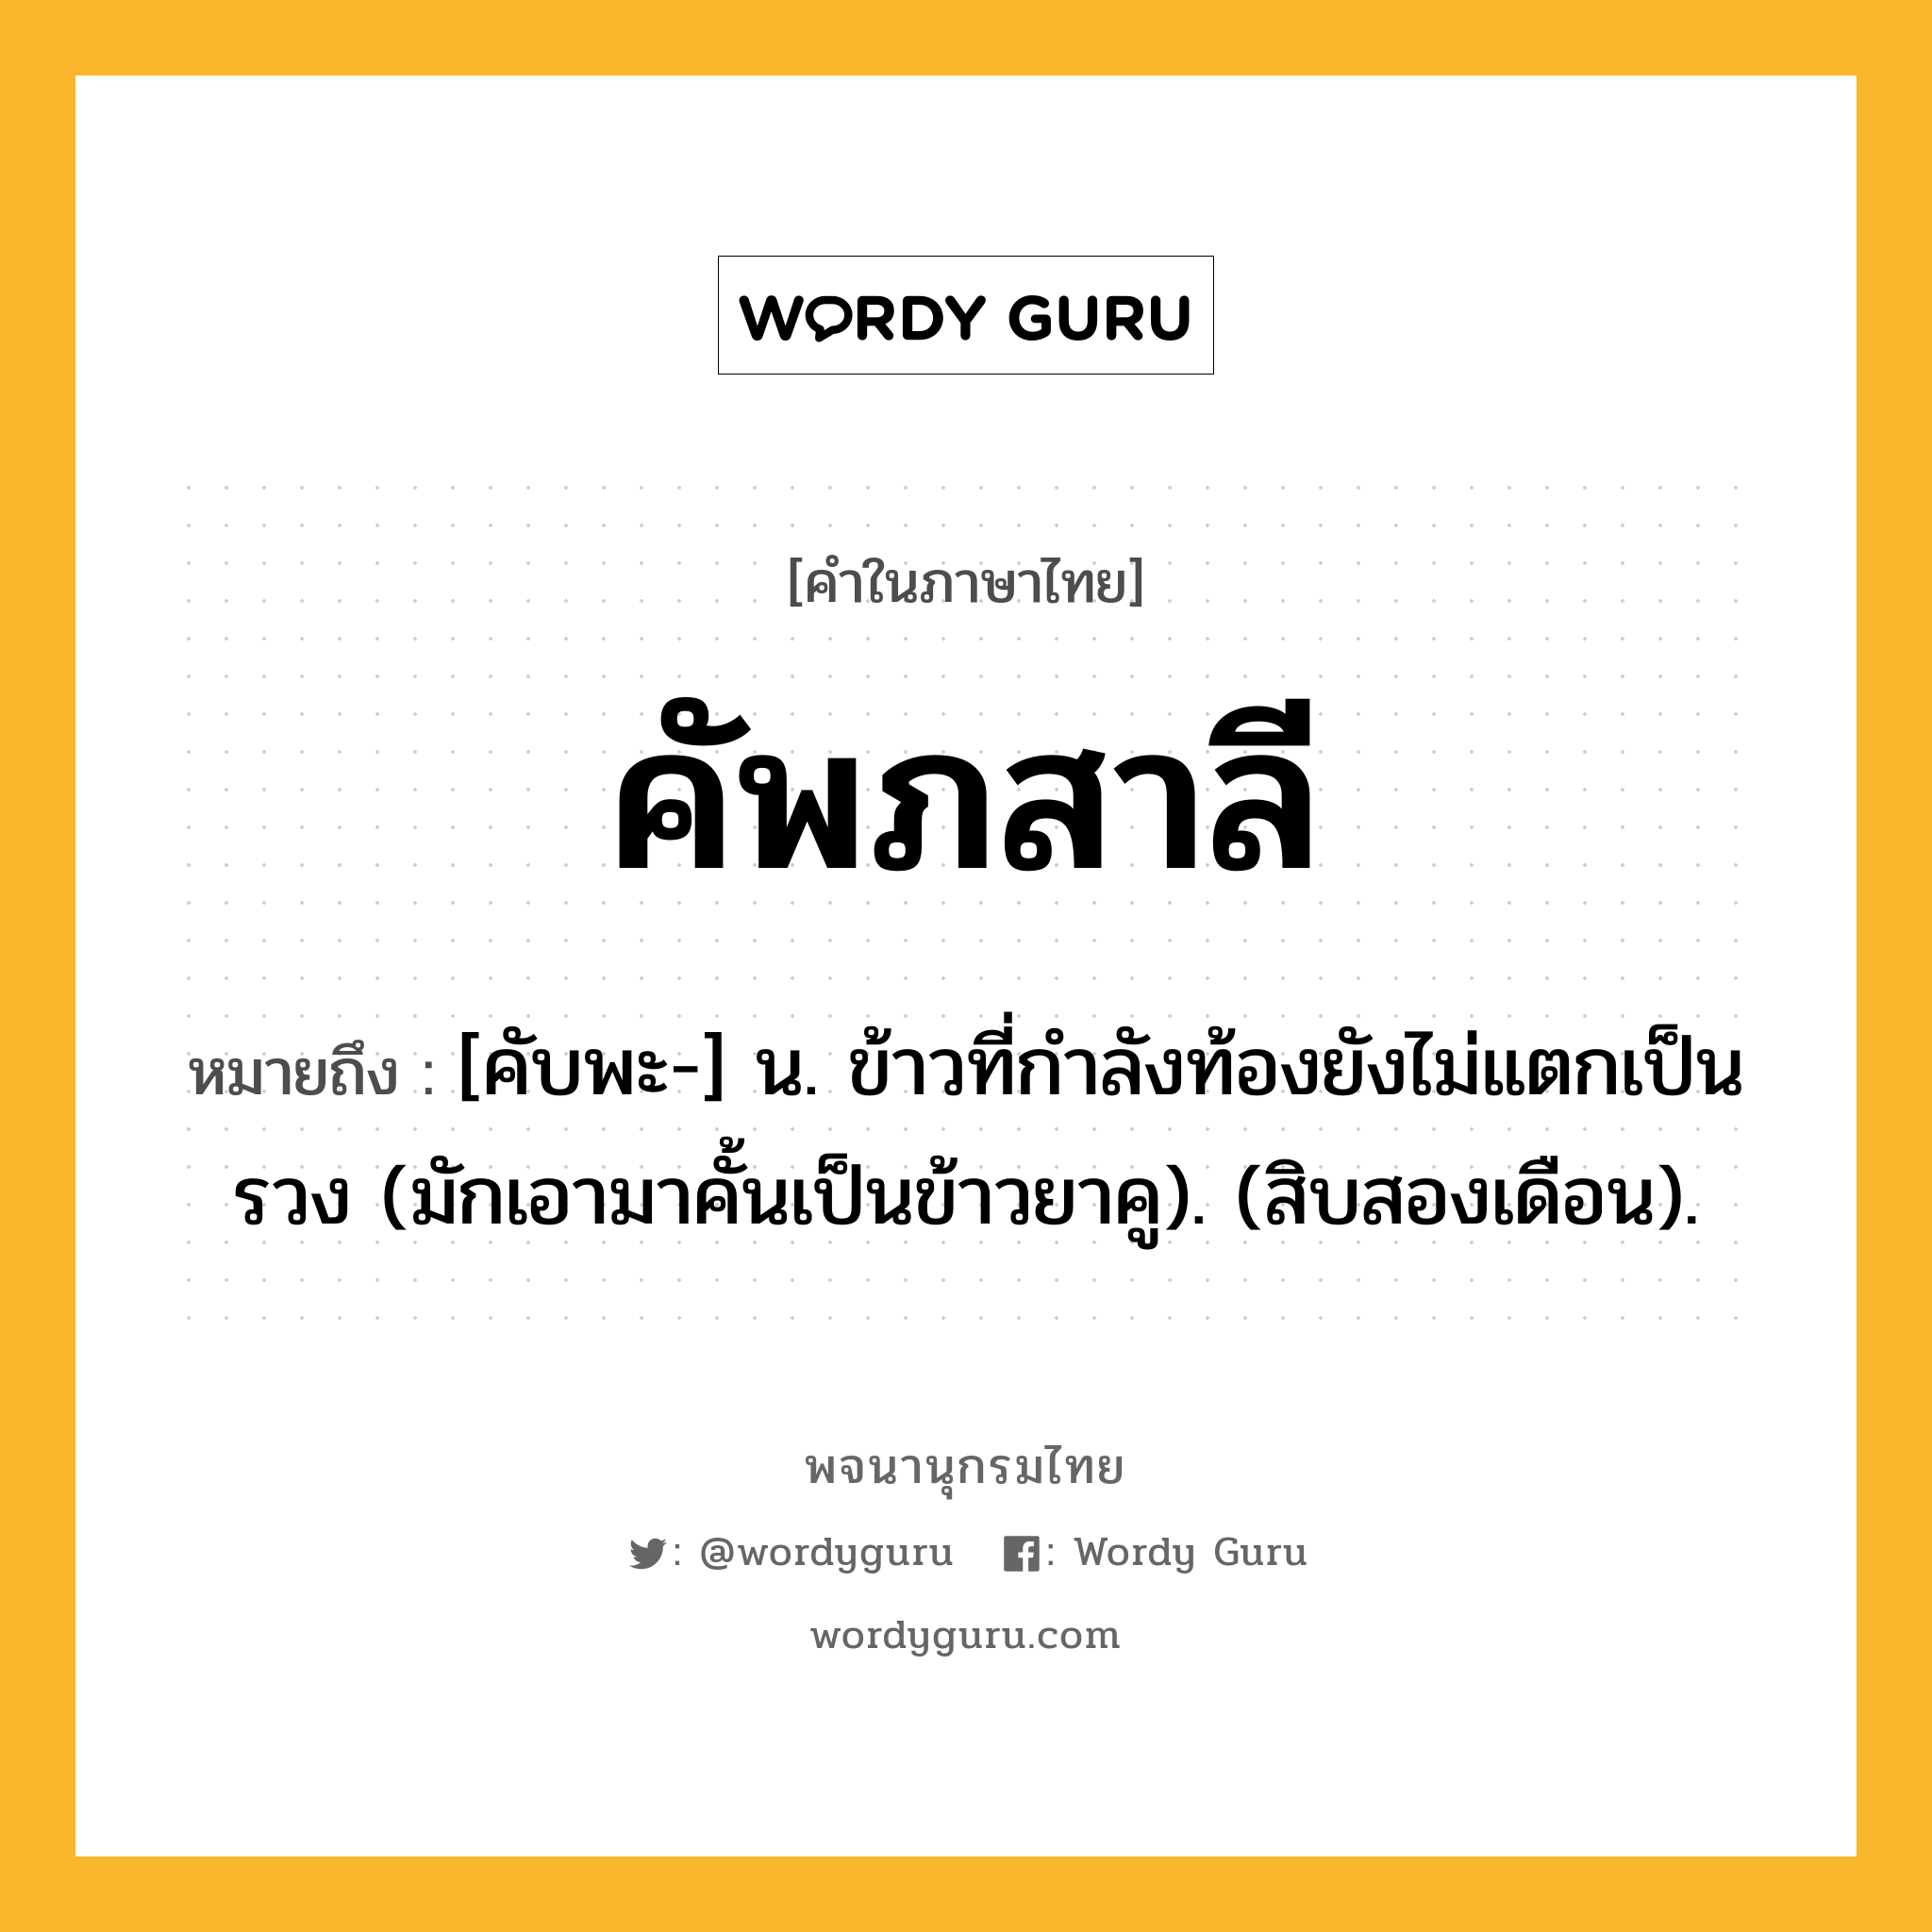 คัพภสาลี หมายถึงอะไร?, คำในภาษาไทย คัพภสาลี หมายถึง [คับพะ-] น. ข้าวที่กําลังท้องยังไม่แตกเป็นรวง (มักเอามาคั้นเป็นข้าวยาคู). (สิบสองเดือน).